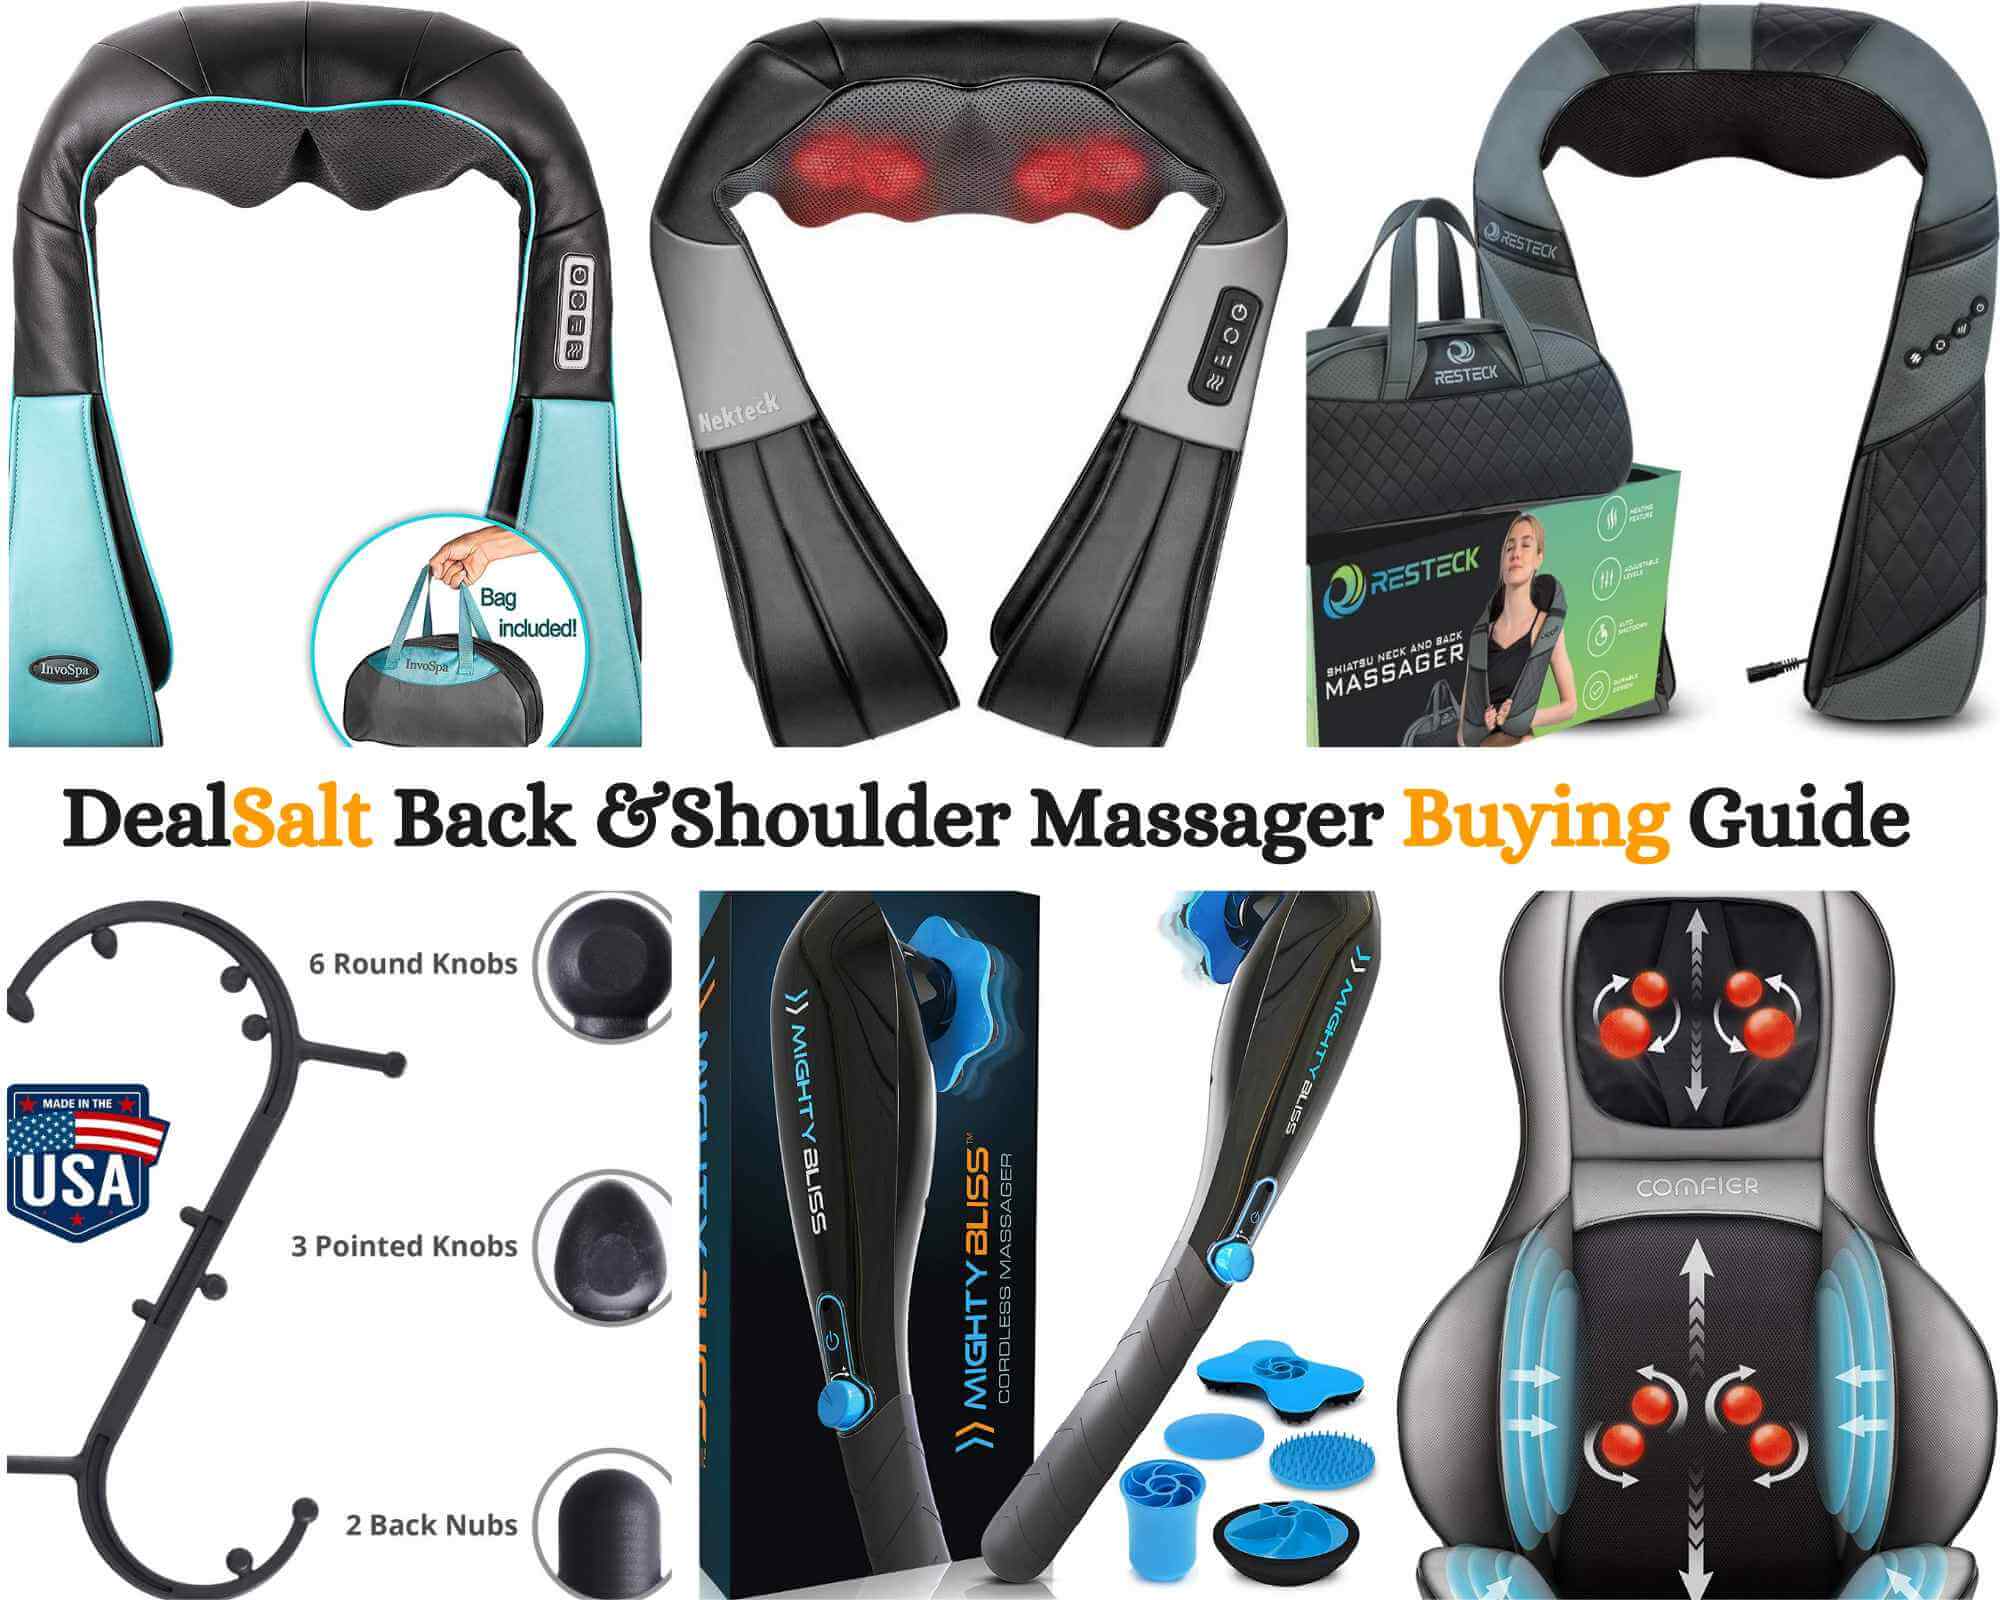 https://dealsalt.com/wp-content/uploads/2021/12/DealSalt-Neck-Back-and-Shoulder-Massager.jpg